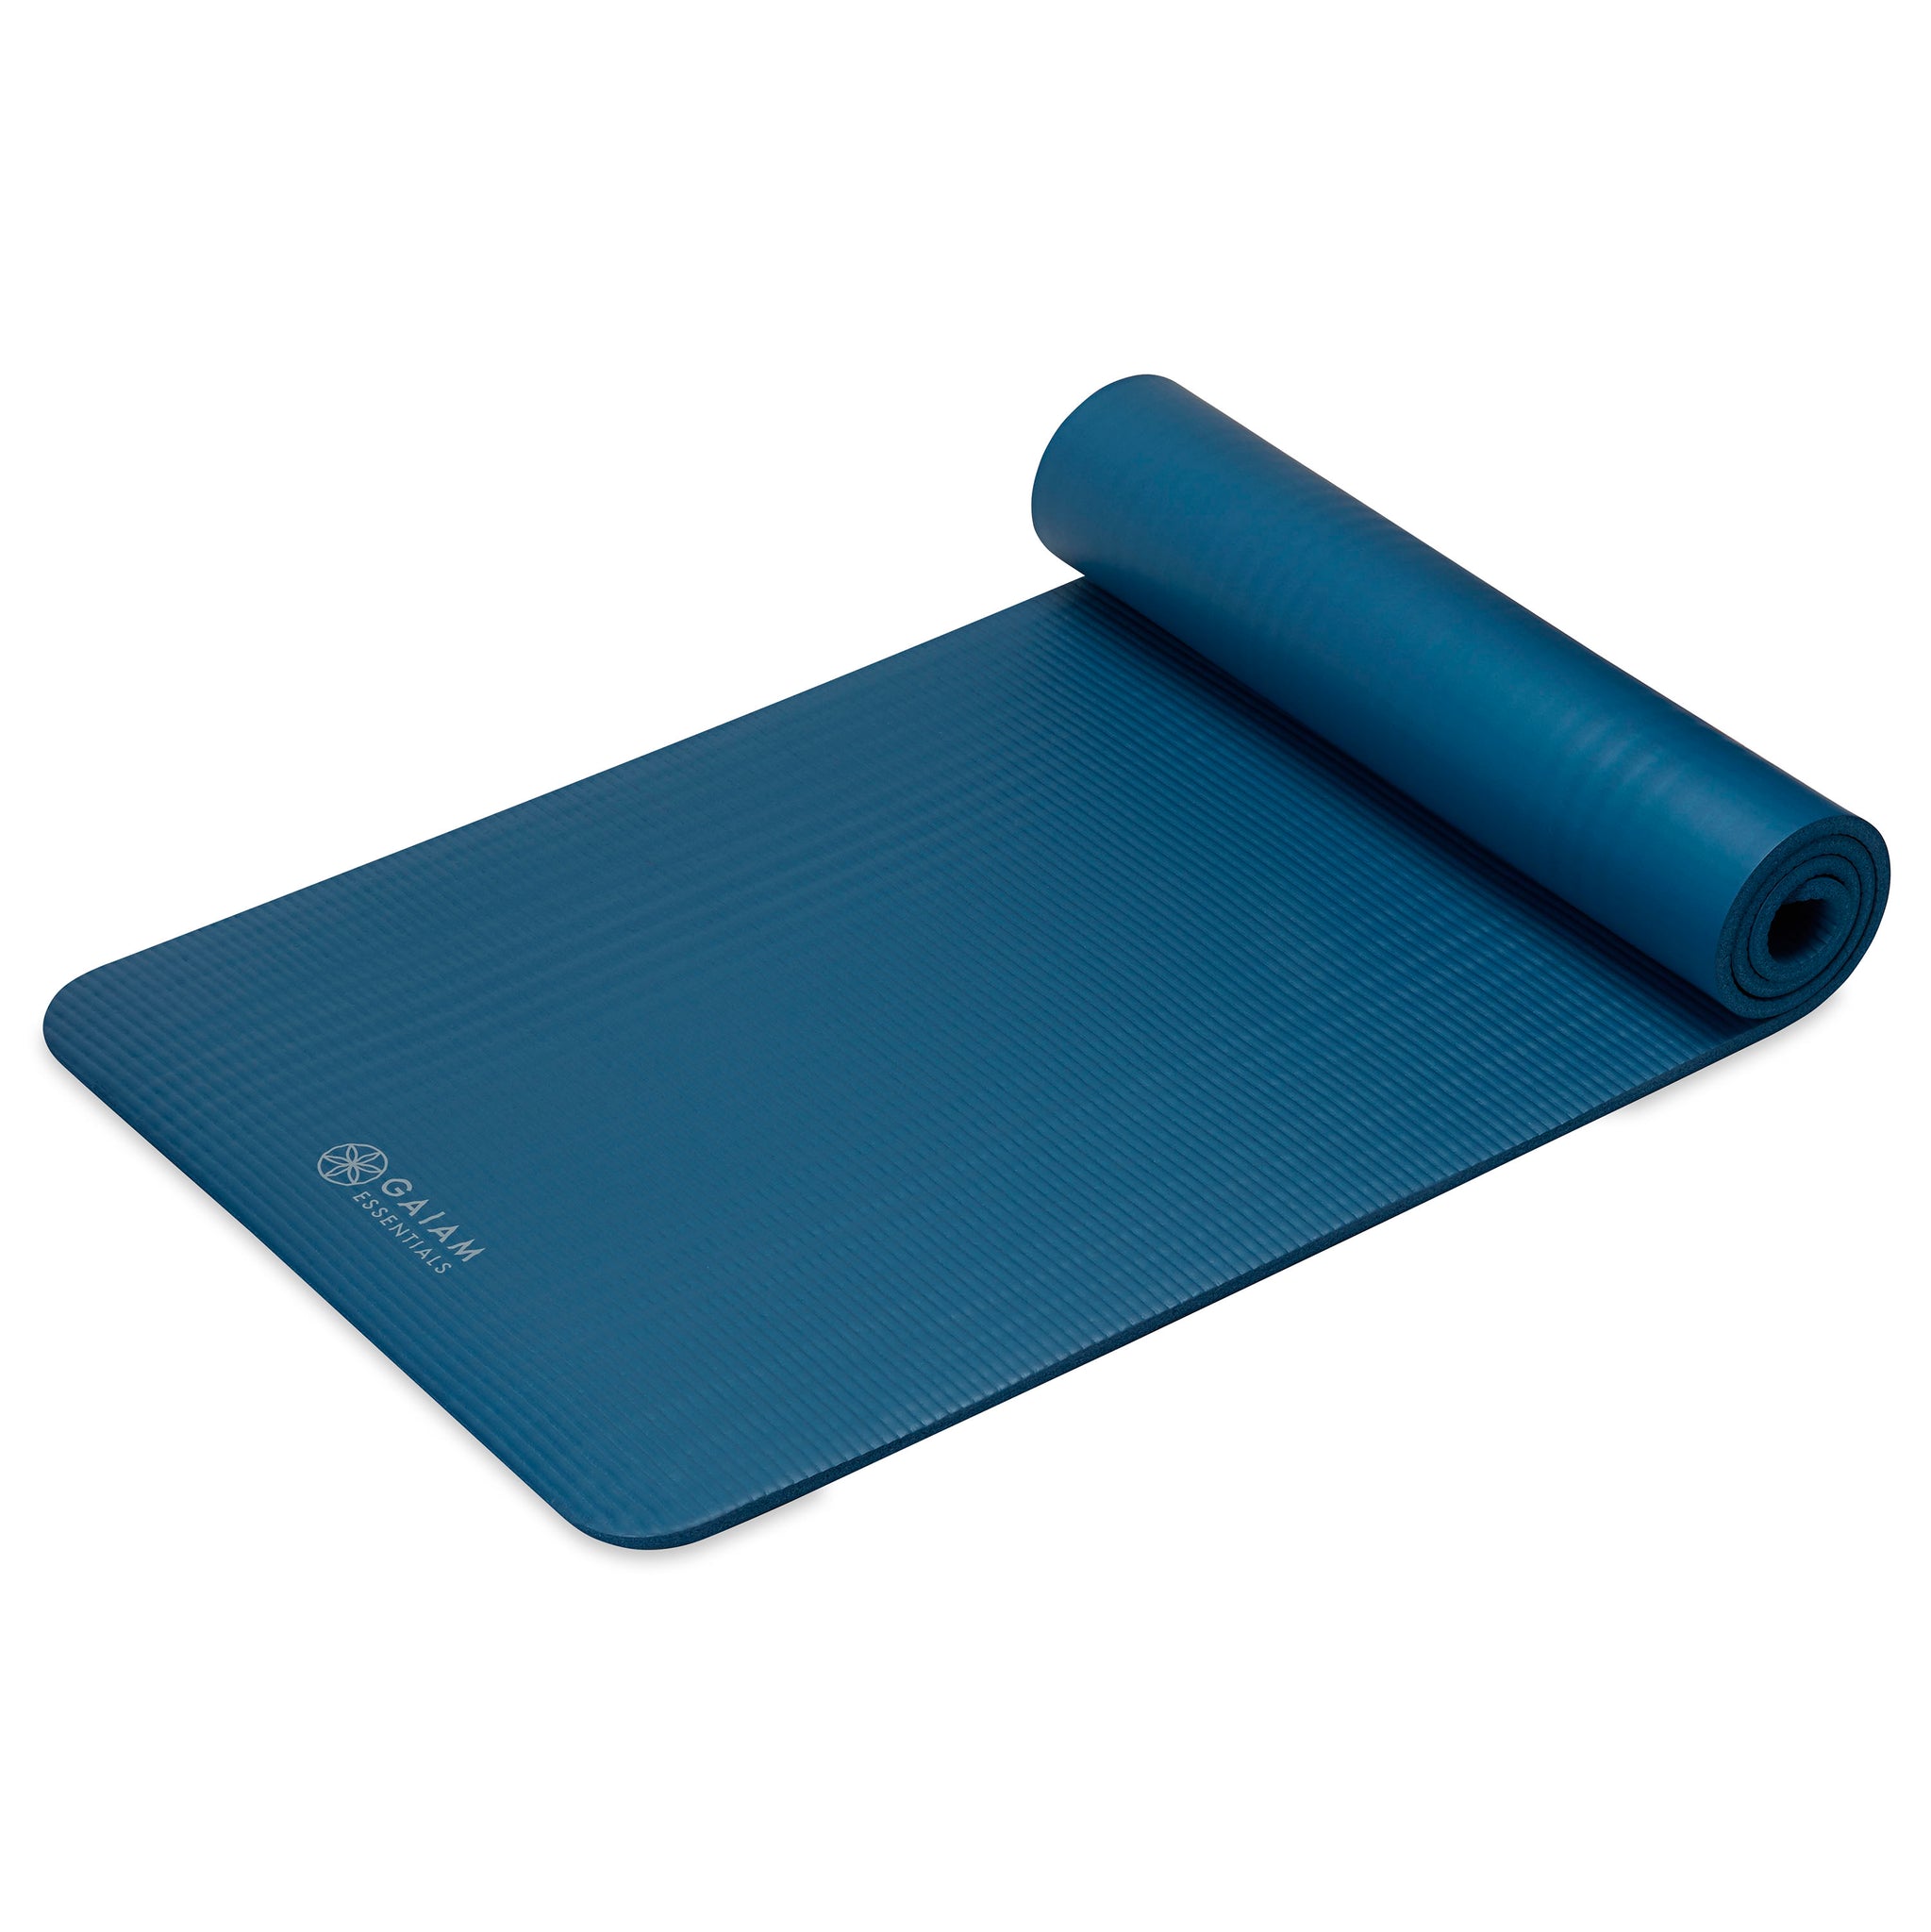  Gaiam Essentials Thick Yoga Mat Fitness & Exercise